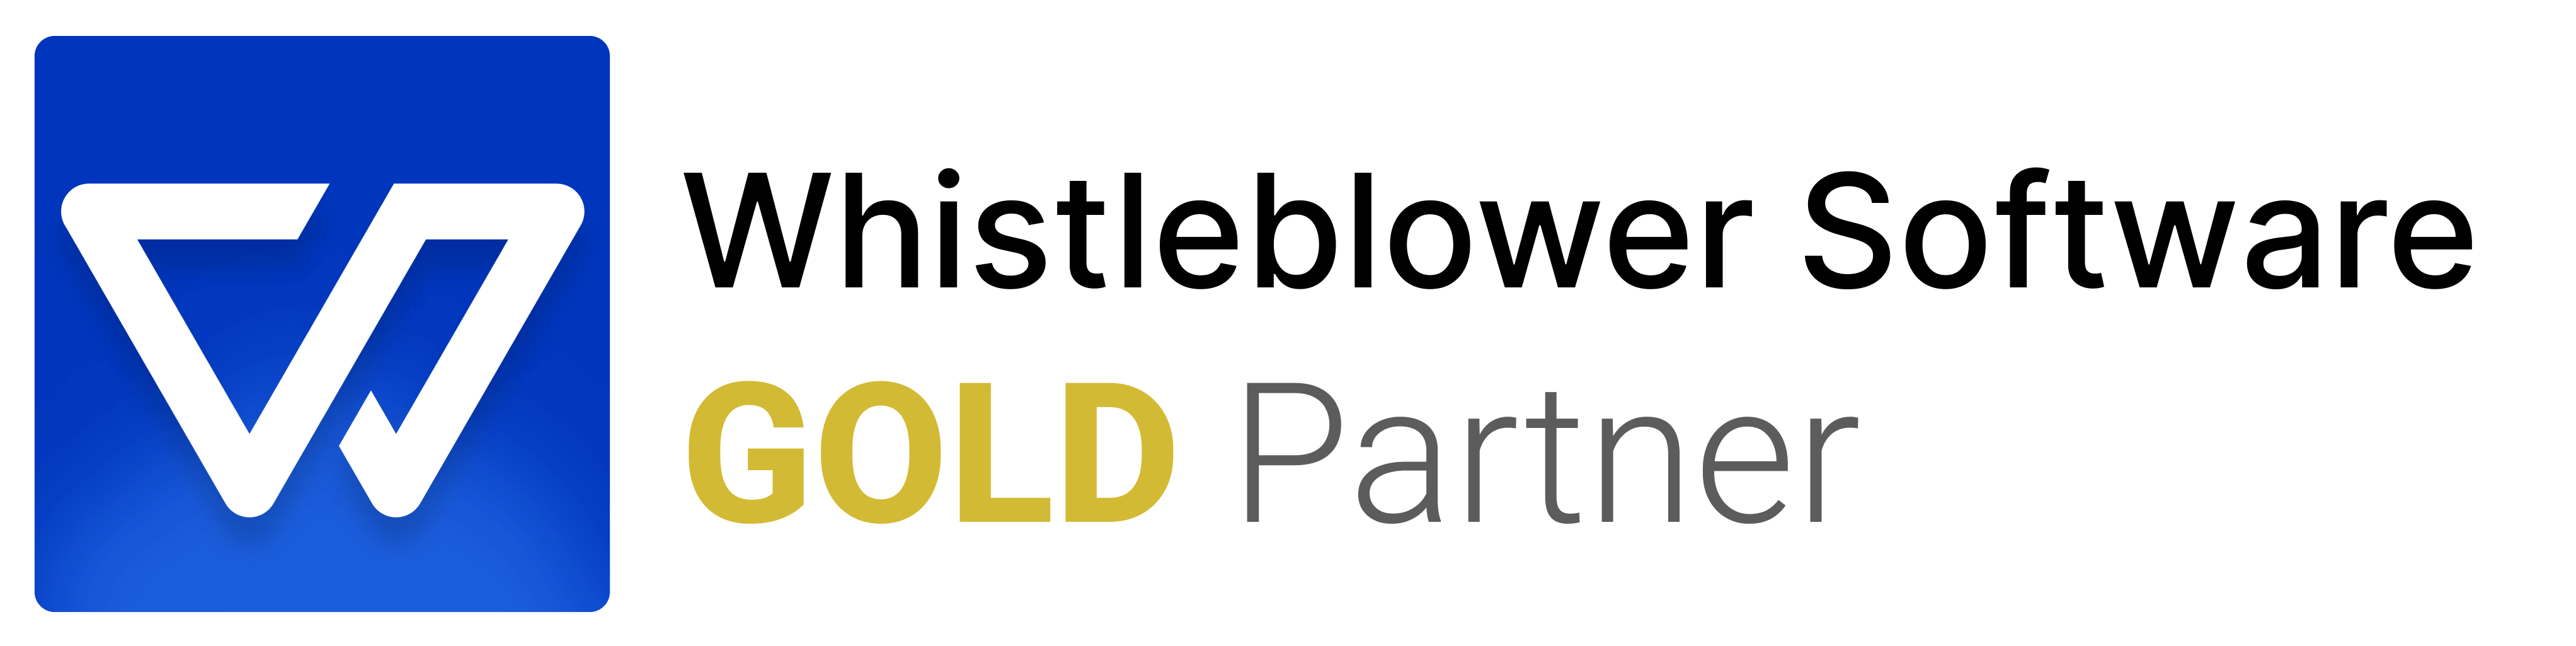 Whisteblower Gold Partner